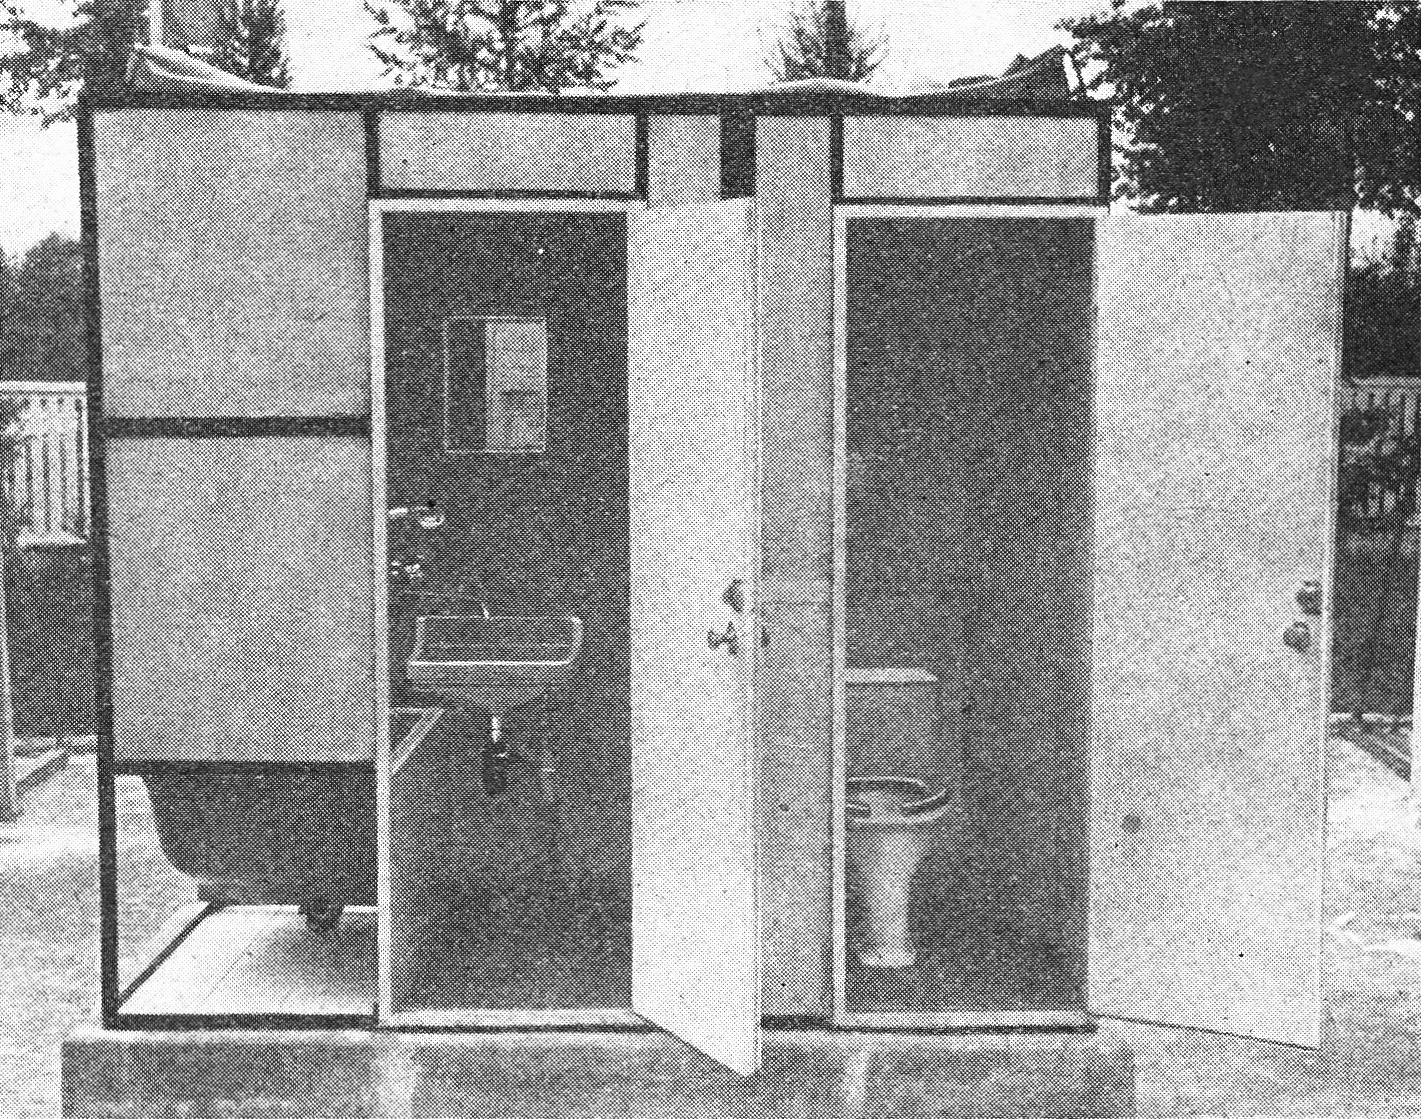 bilde av baderomsmodul fra 60-tallet med separate rom for toalett og vask/badekar